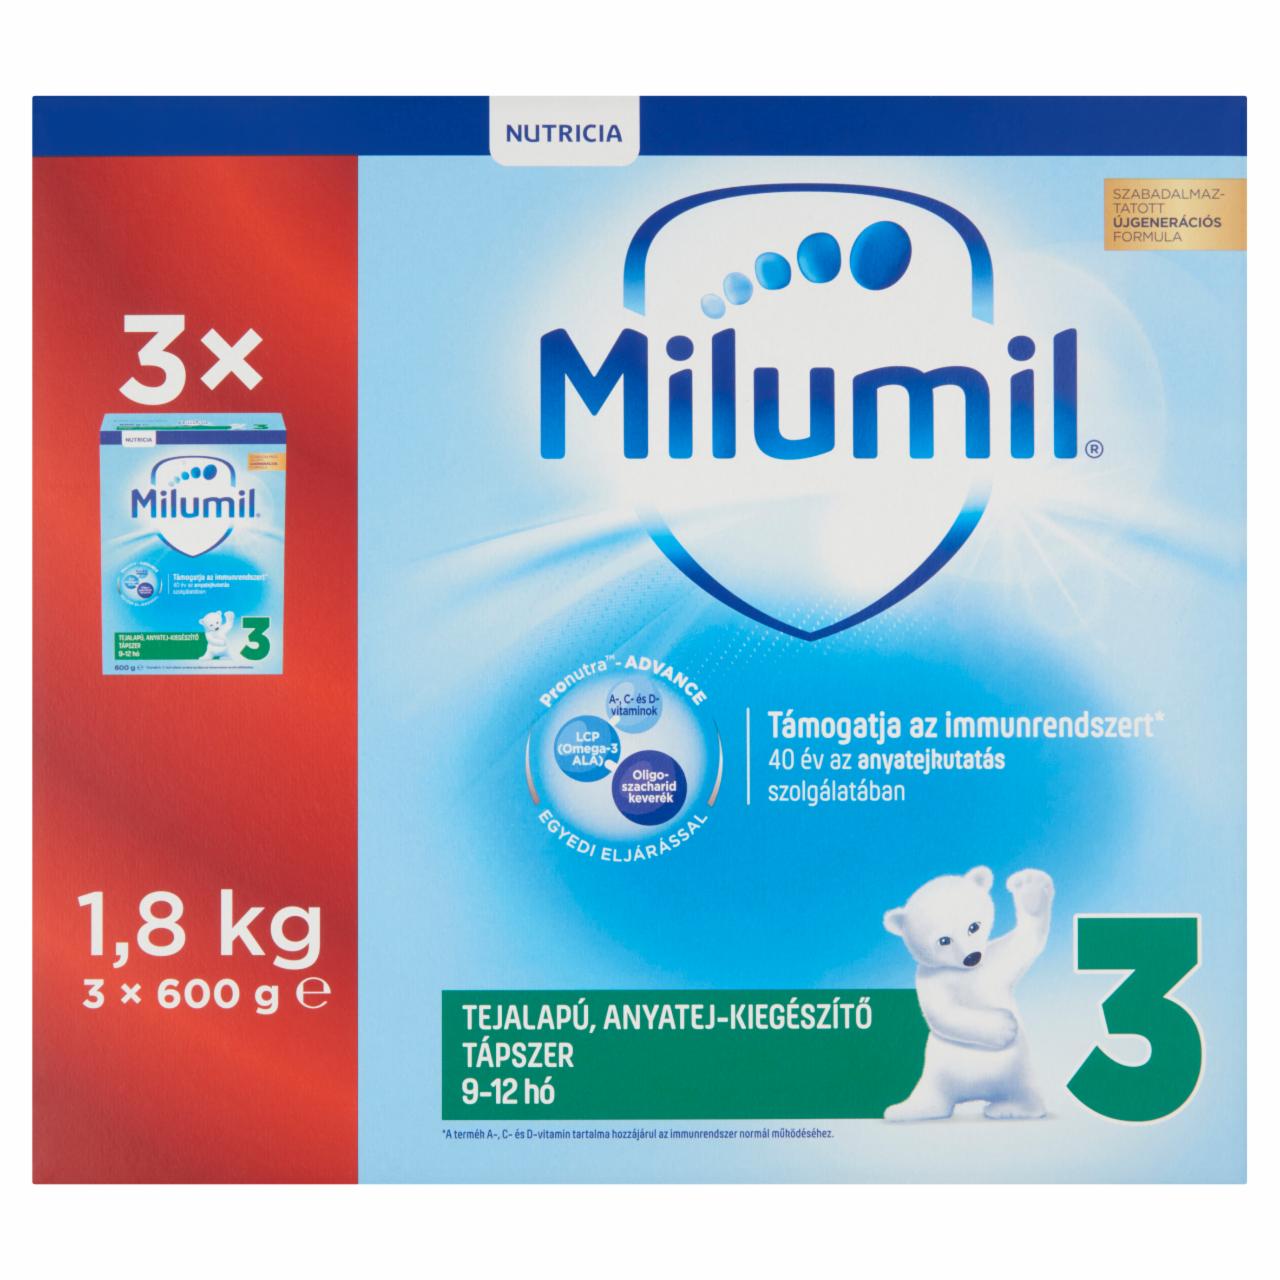 Képek - Milumil 3 tejalapú, anyatej-kiegészítő tápszer 9-12 hó 1,8 kg